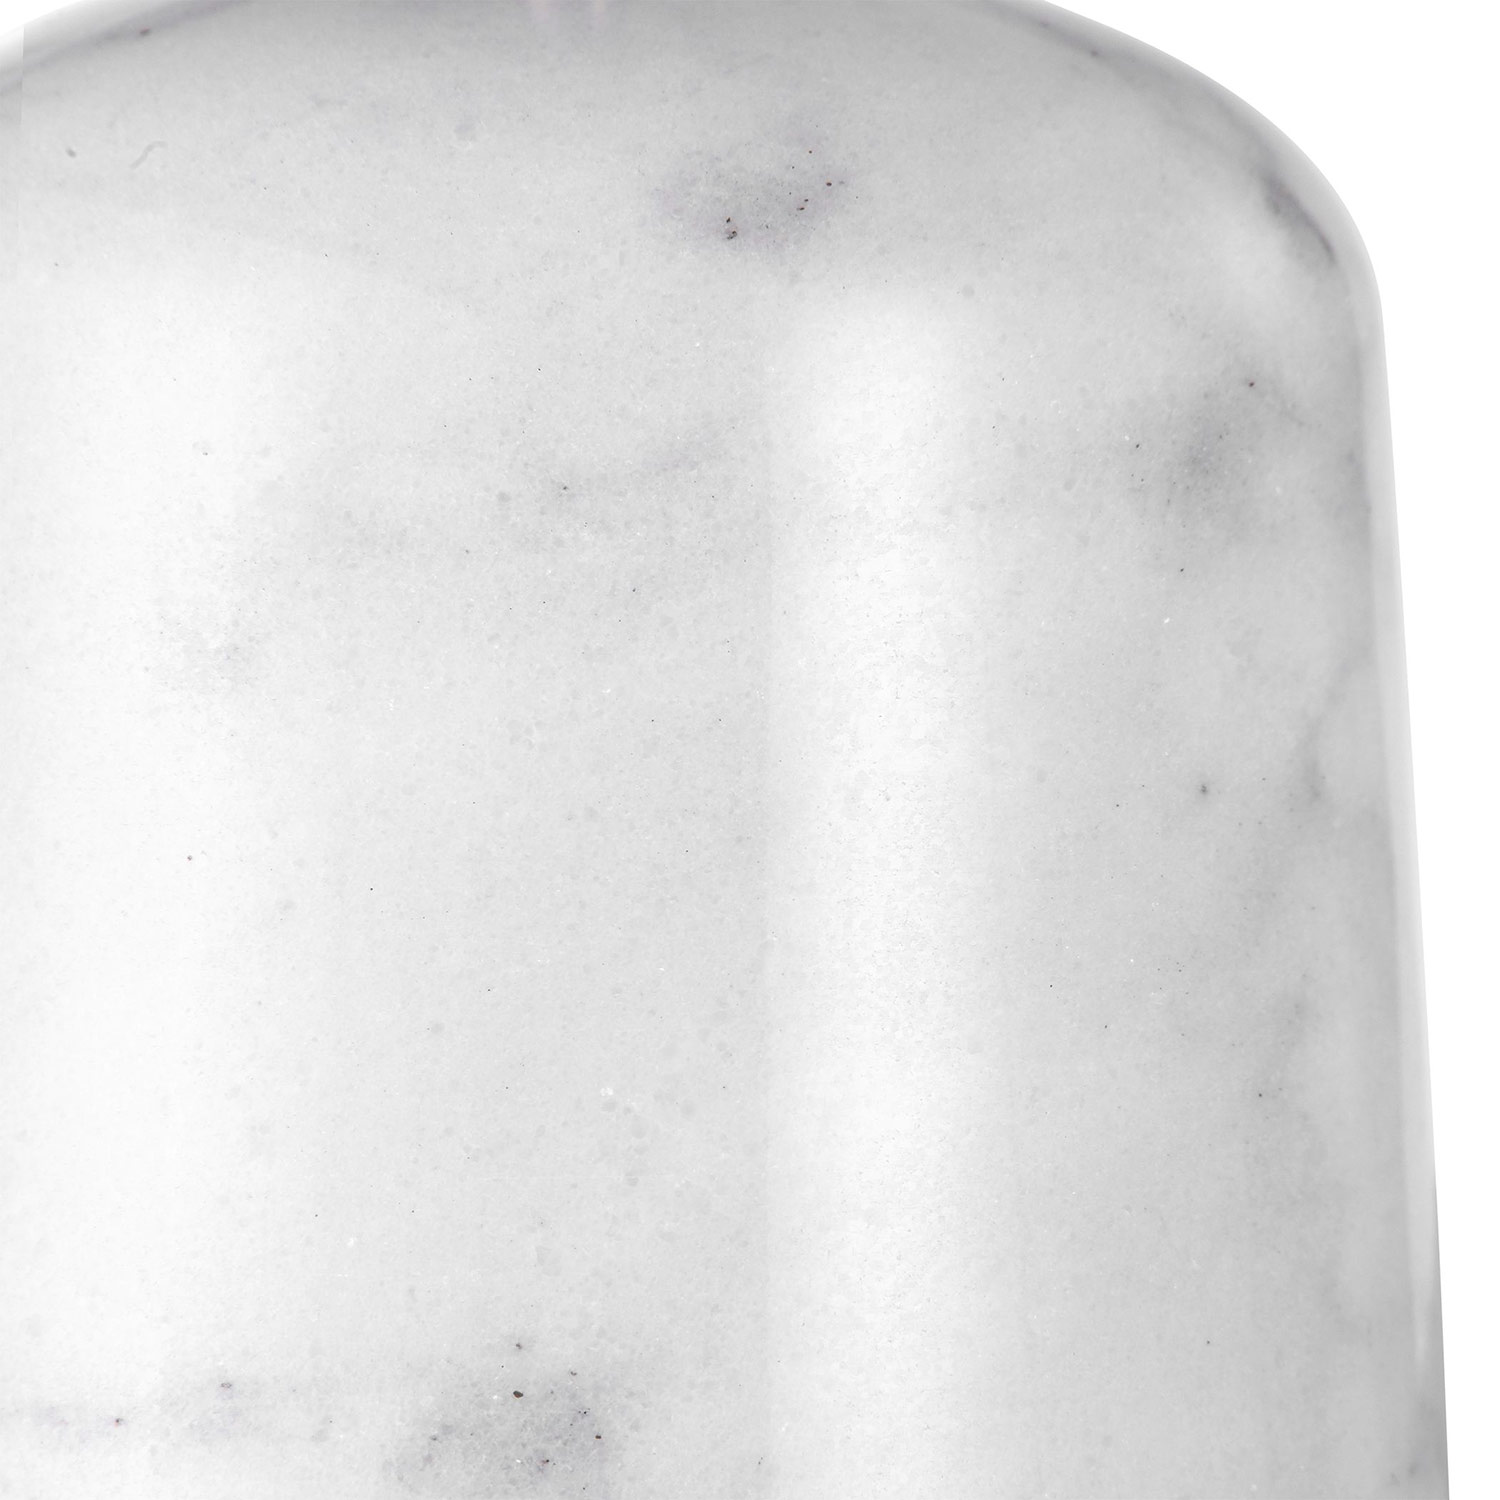 Uttermost Eloise Table Lamp - White Marble